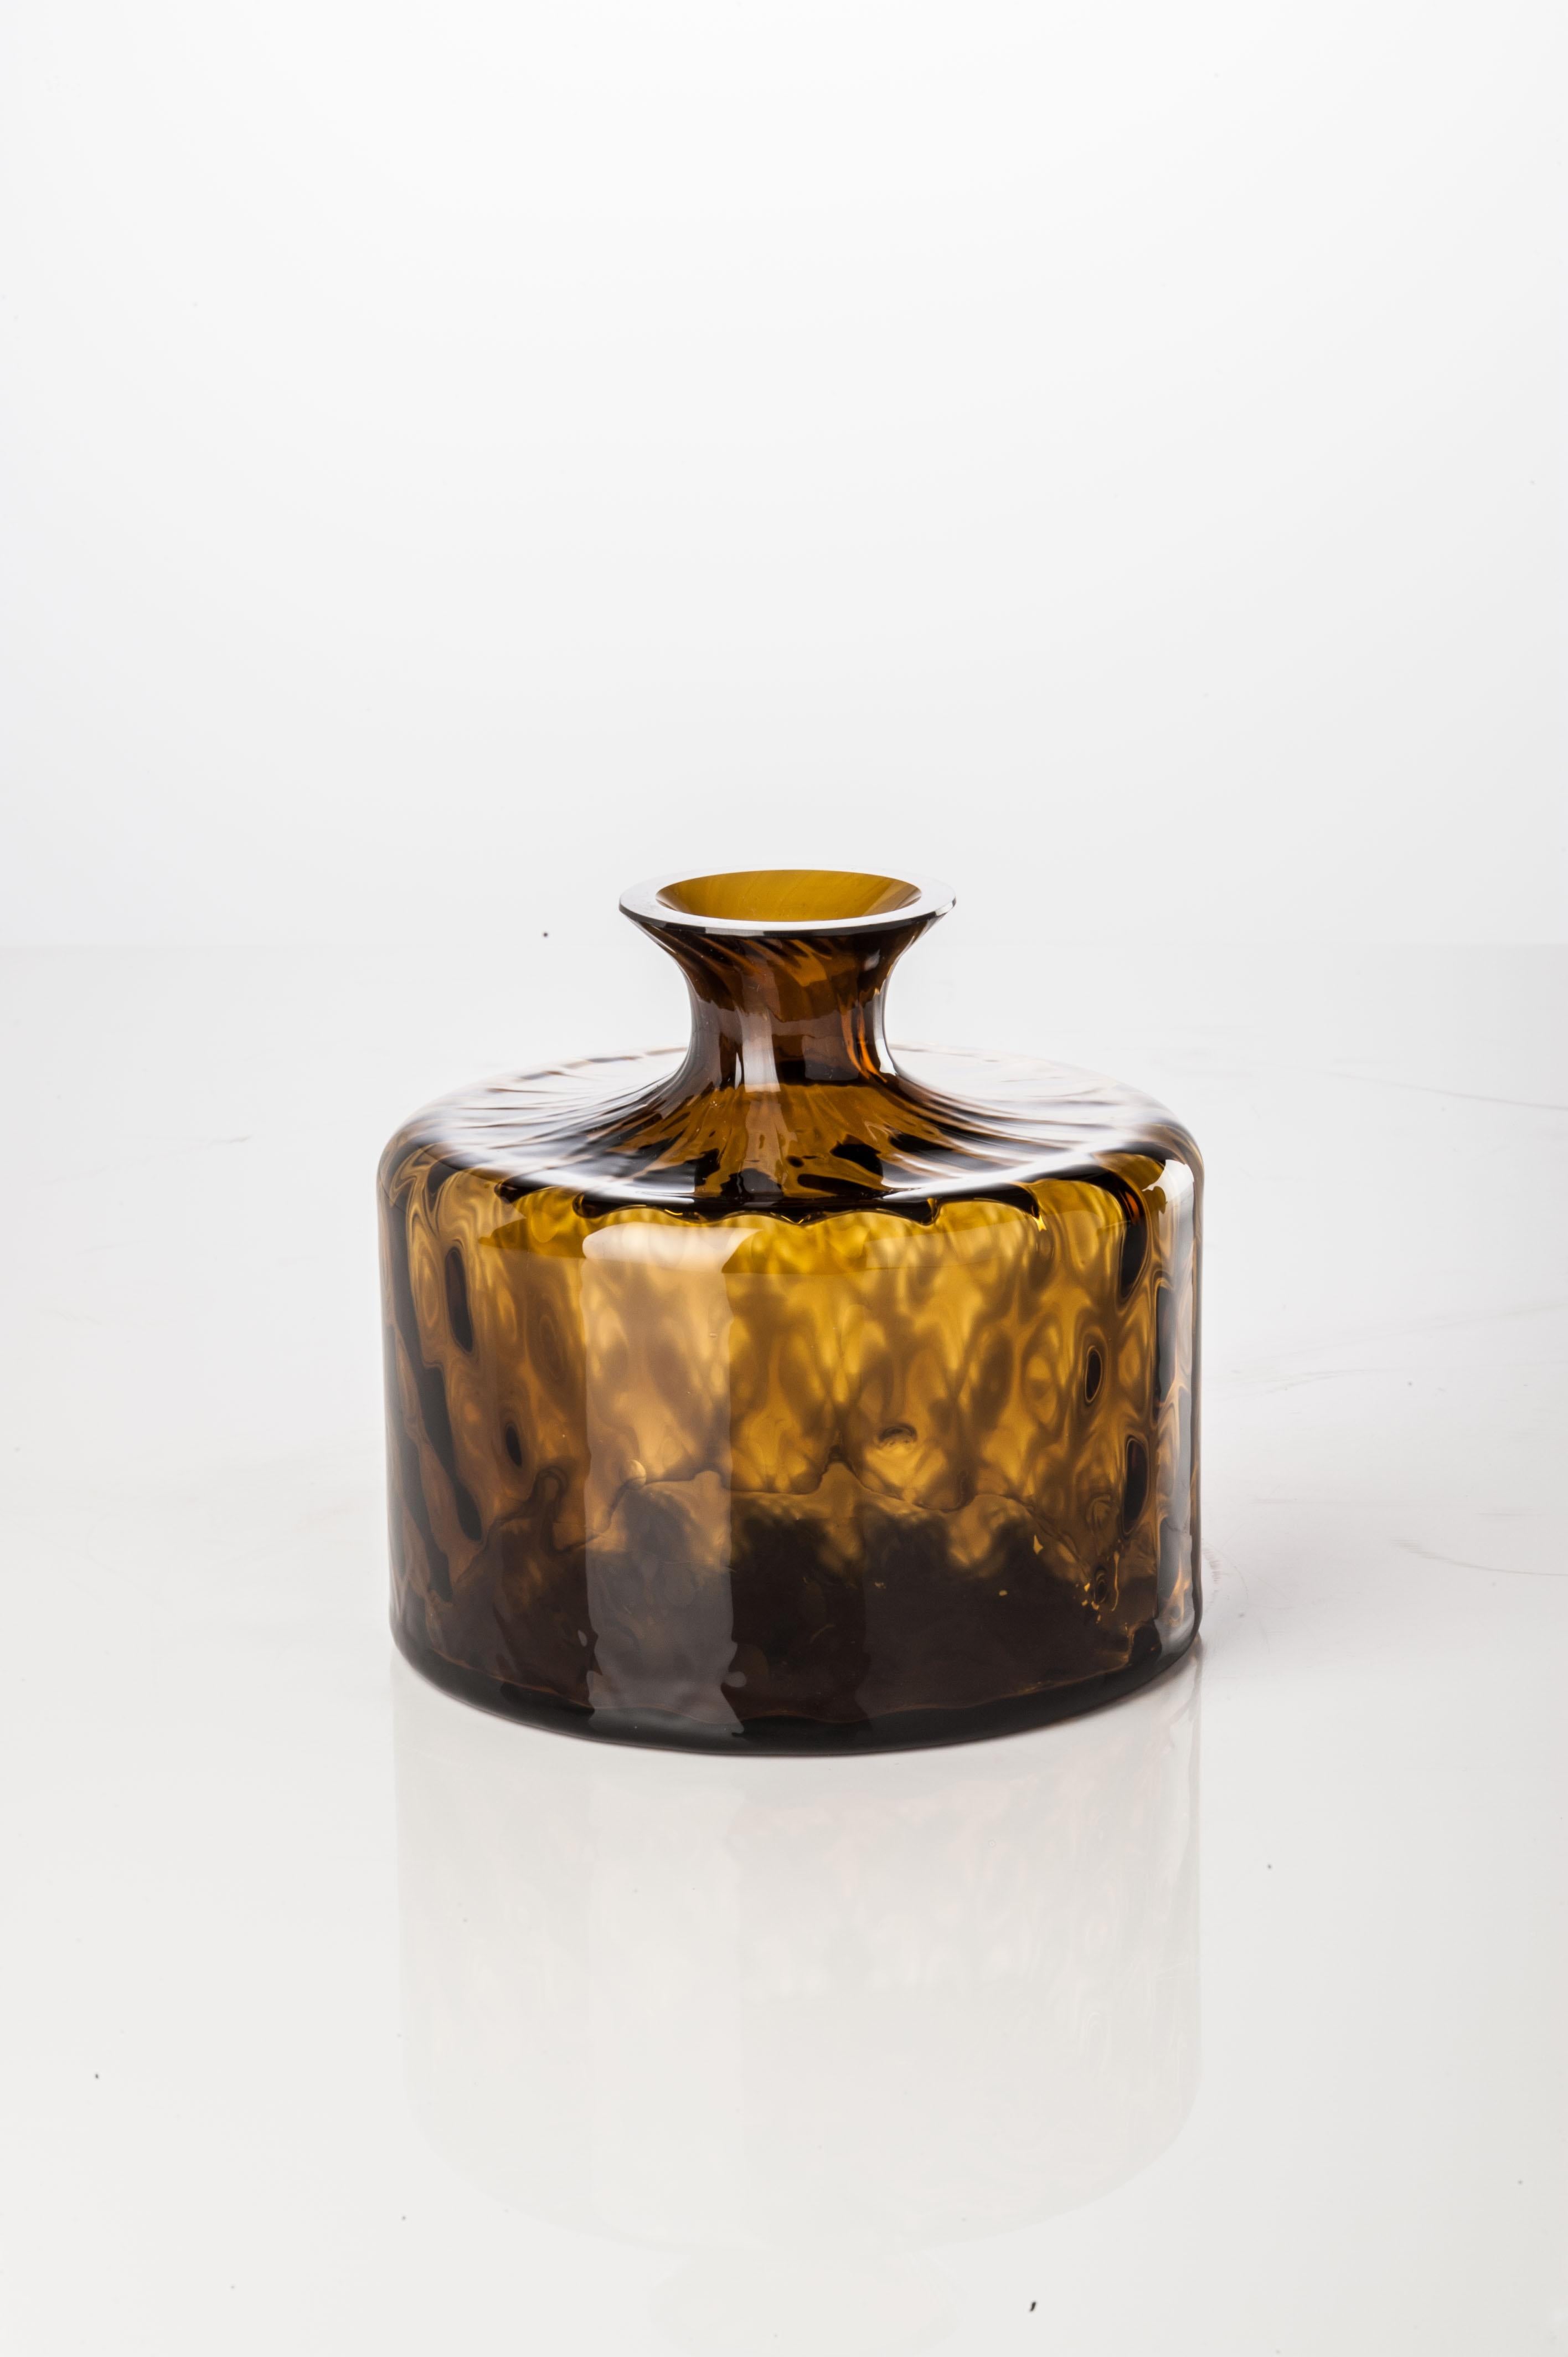 Die von Venini entworfene und hergestellte Glasvasen-Kollektion Monofiore Carnevale besteht aus zwei unterschiedlich geformten Vasen. Nur für den Innenbereich. 

Abmessungen: Ø 13 cm, H 12 cm.